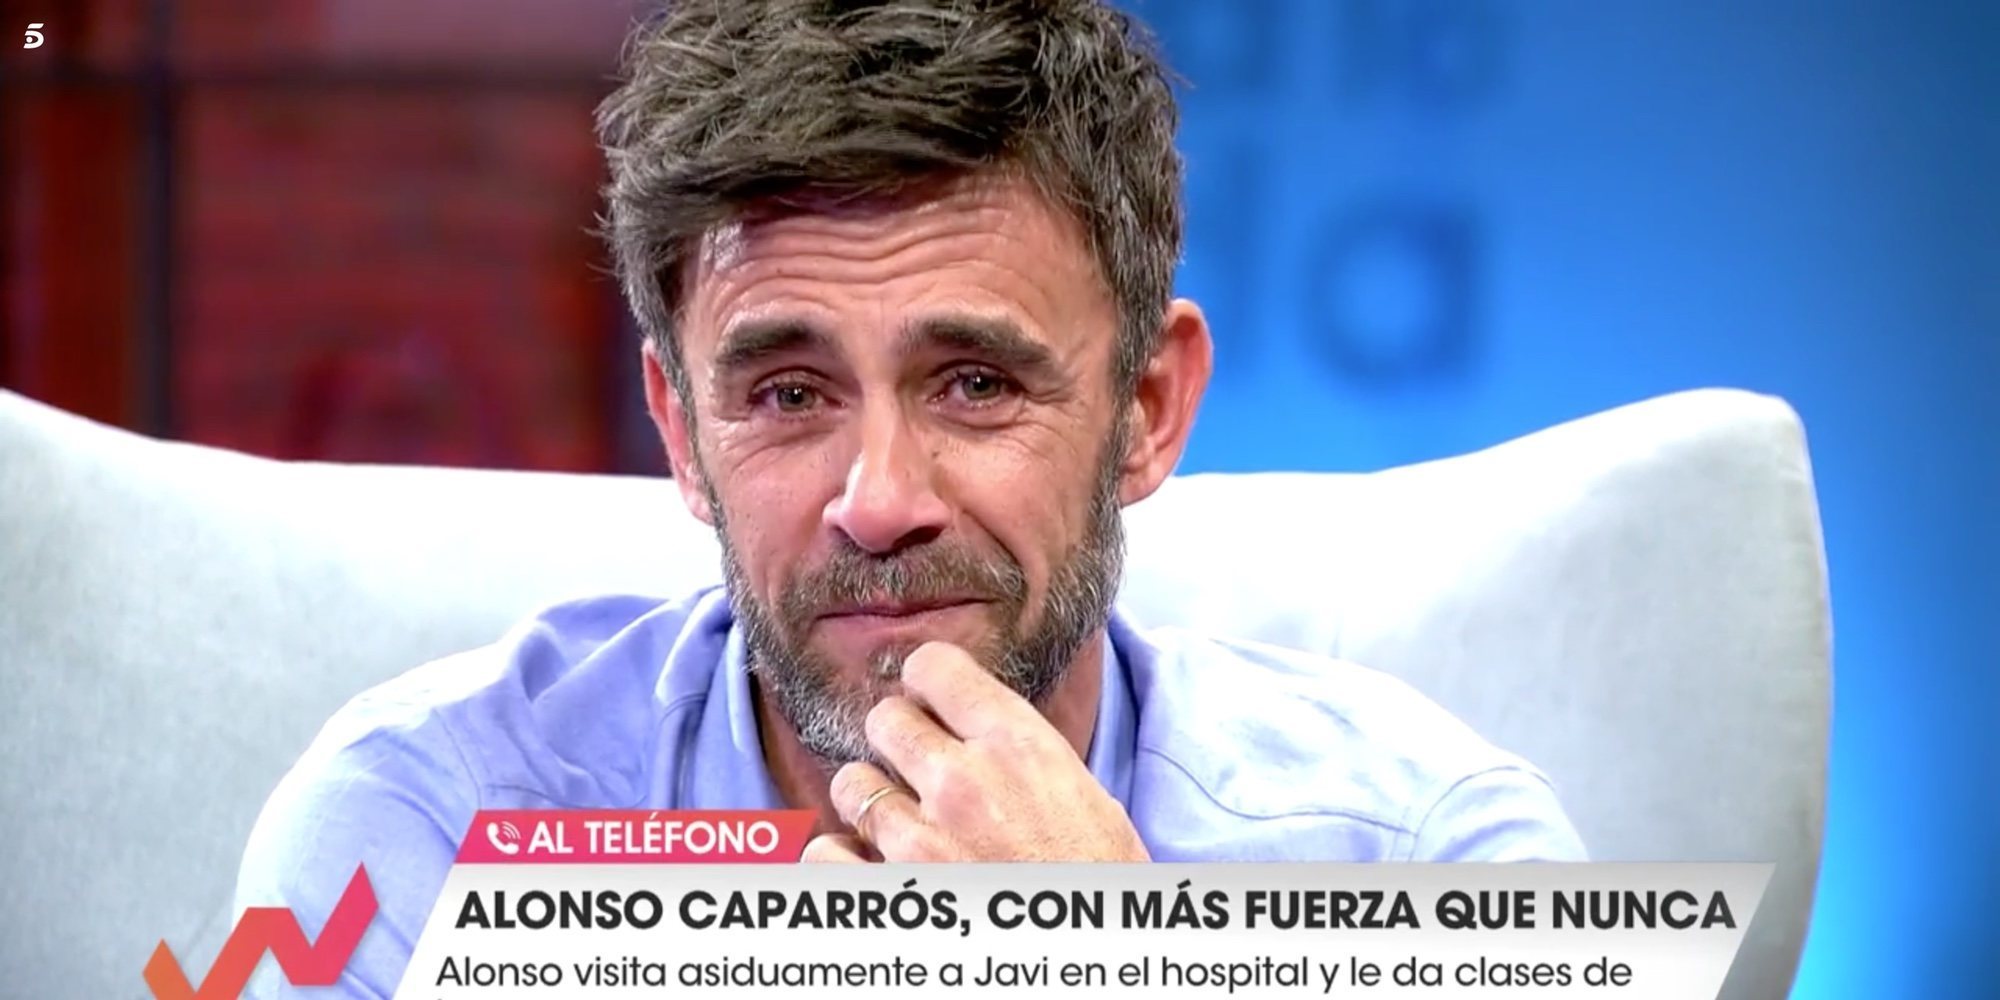 Alonso Caparrós, emocionado por un joven con leucemia': "Gracias por quedarte conmigo en el hospital"